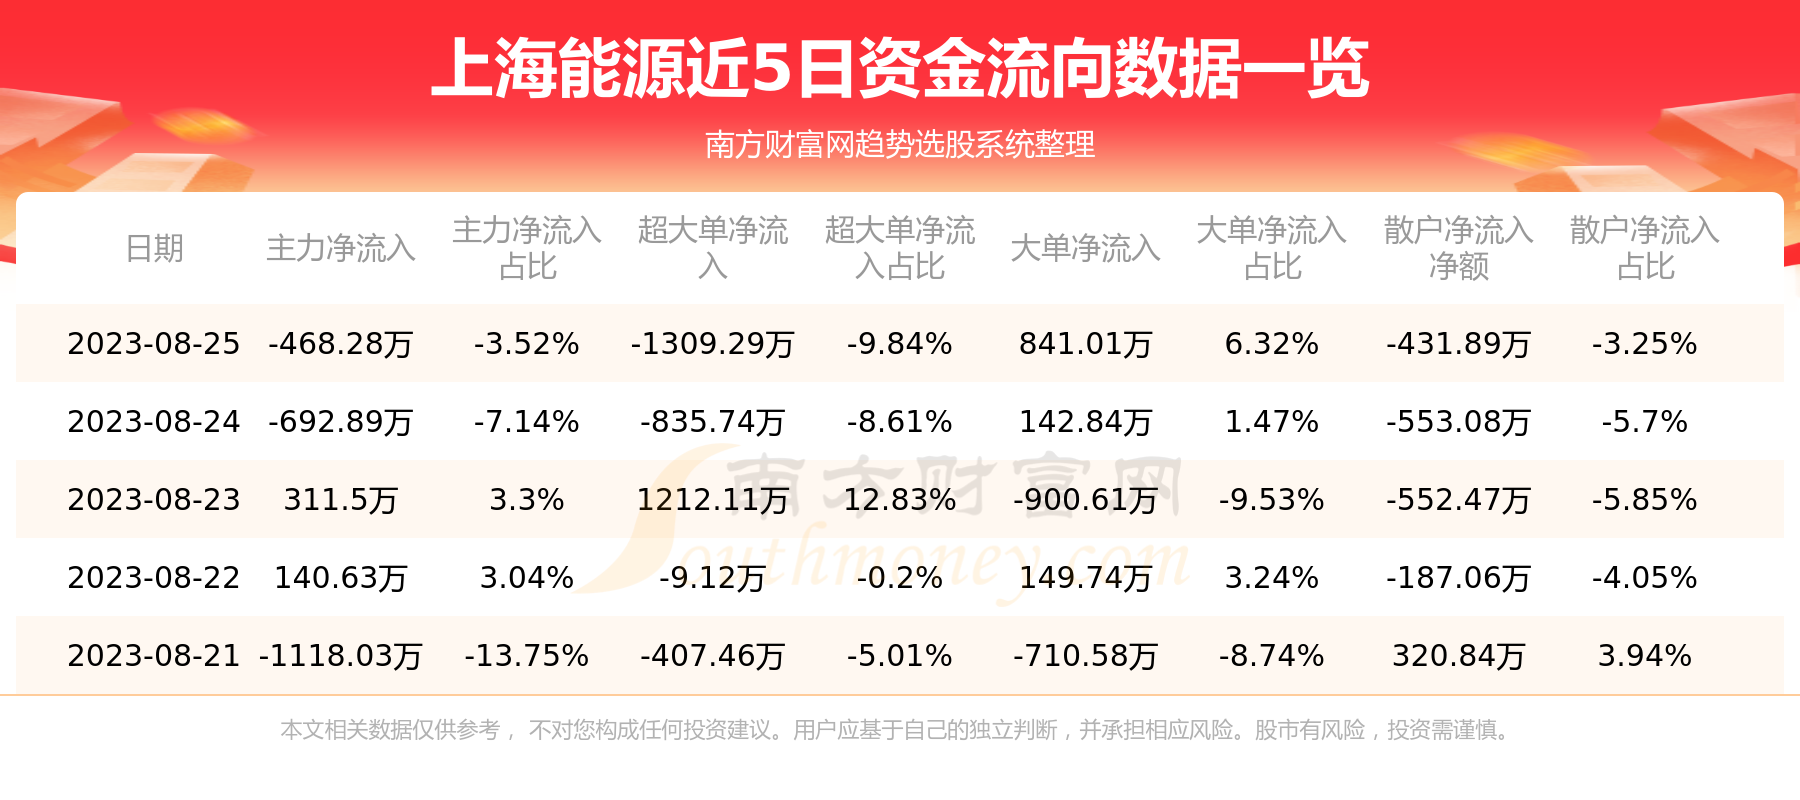 【8月25日资金流向】上海能源资金流向一览表